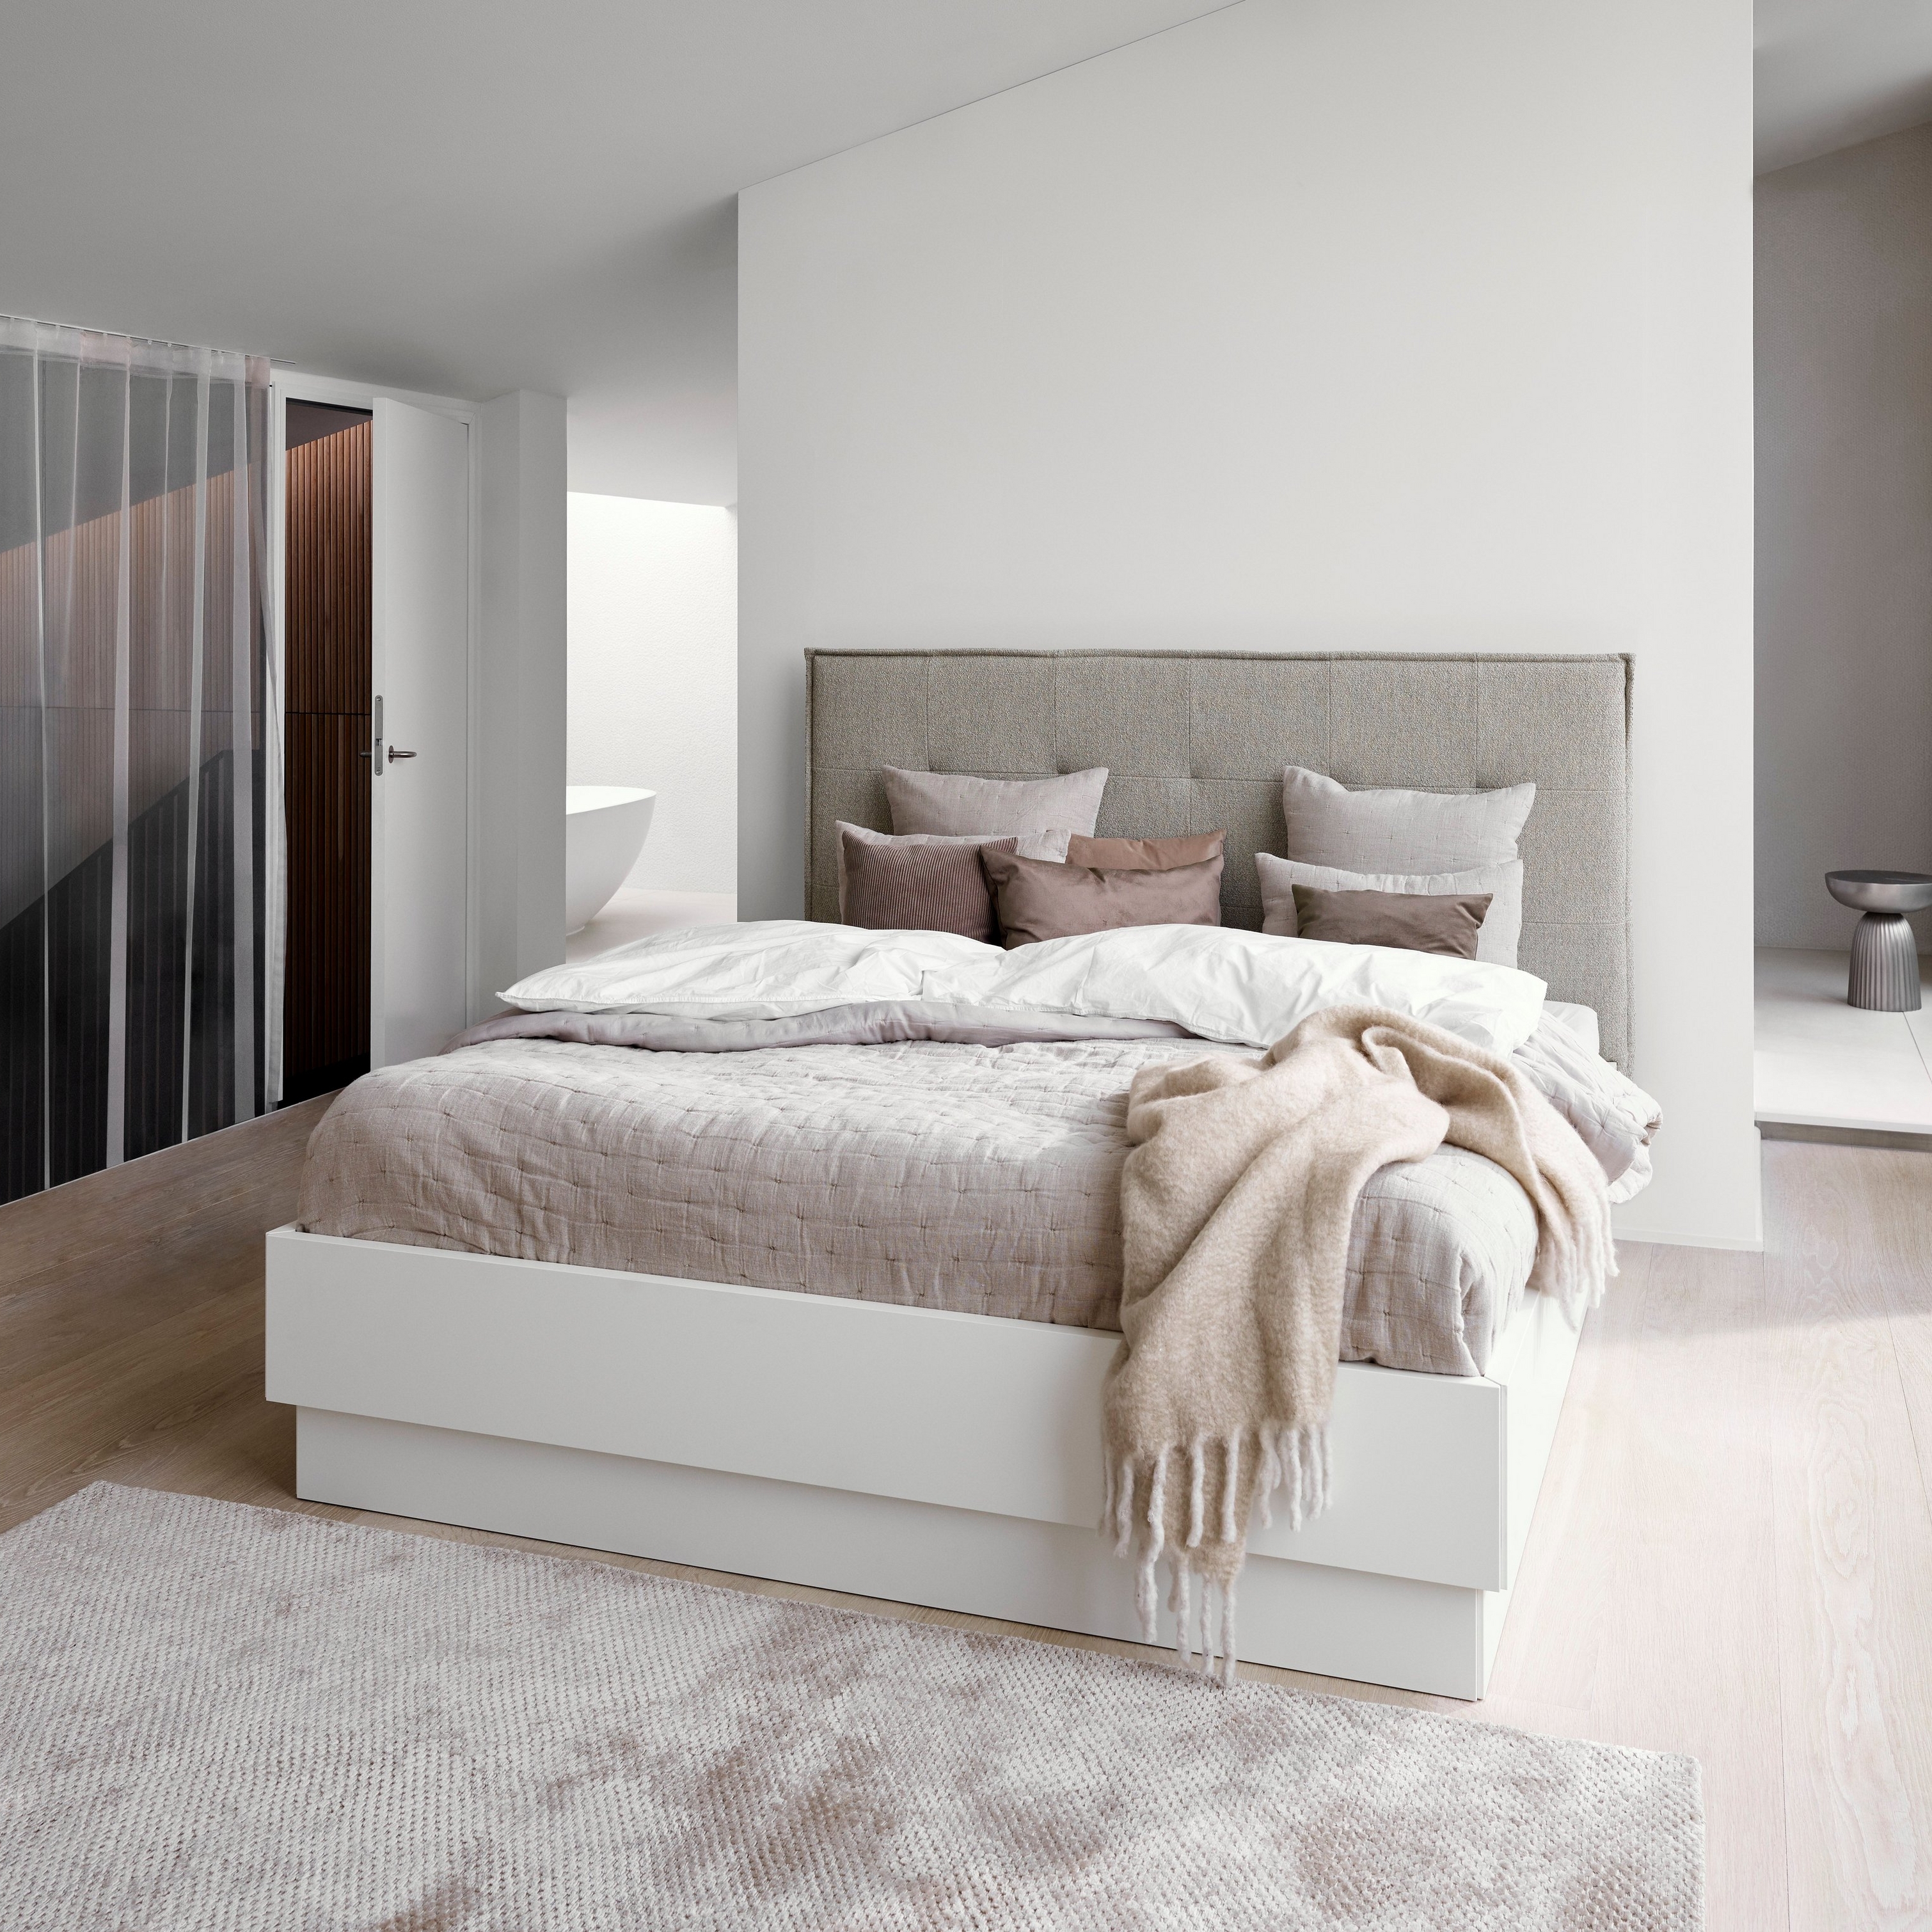 Minimalistisk soveværelse med grå polstret seng, hvidt sengetøj og tekstureret beige plaid.